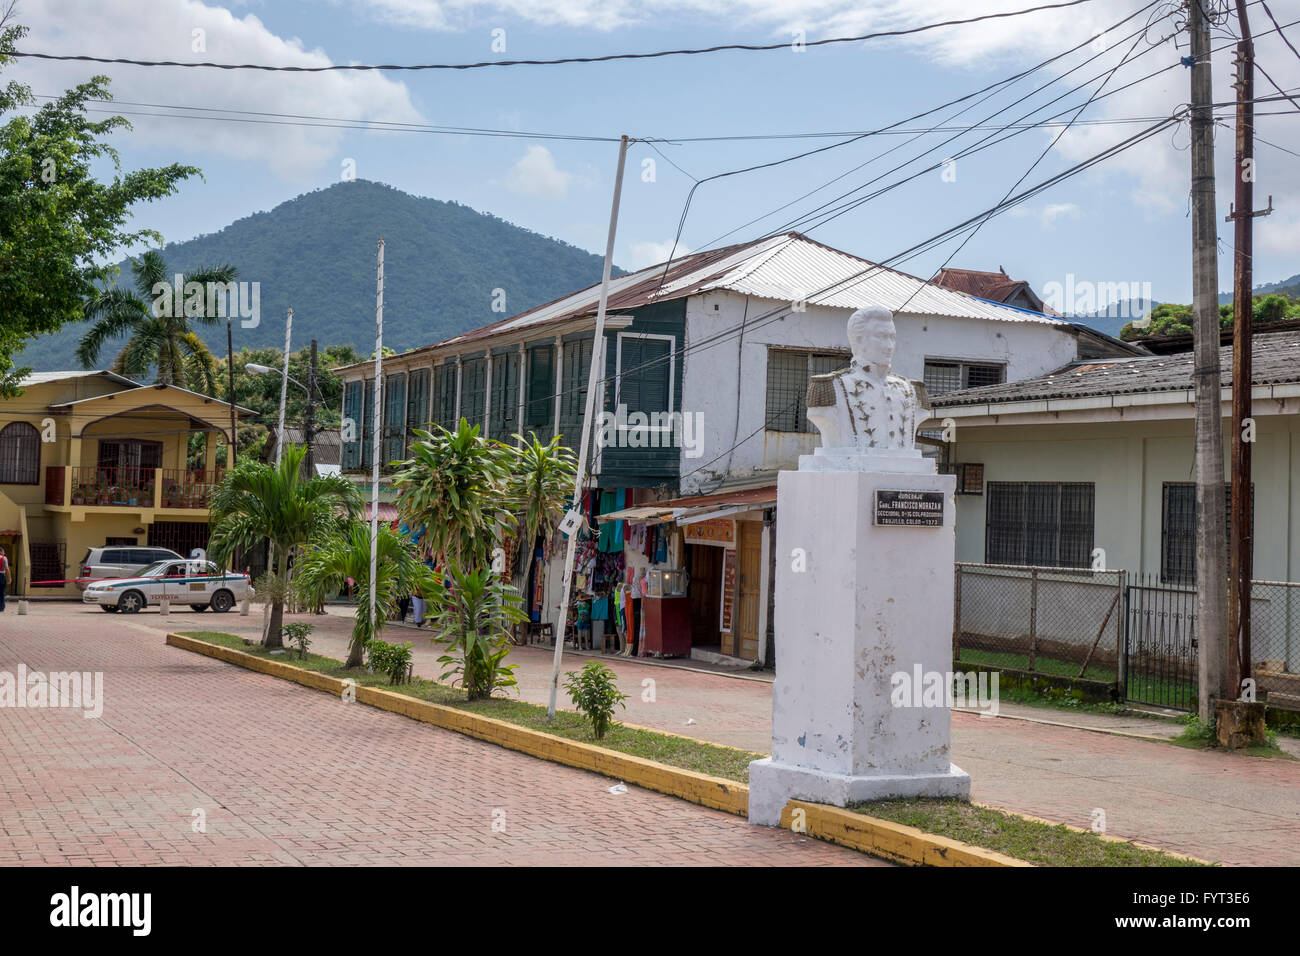 A Statue Of General Francisco Morazan On 1 Calle, Trujillo, Colon, Honduras Stock Photo